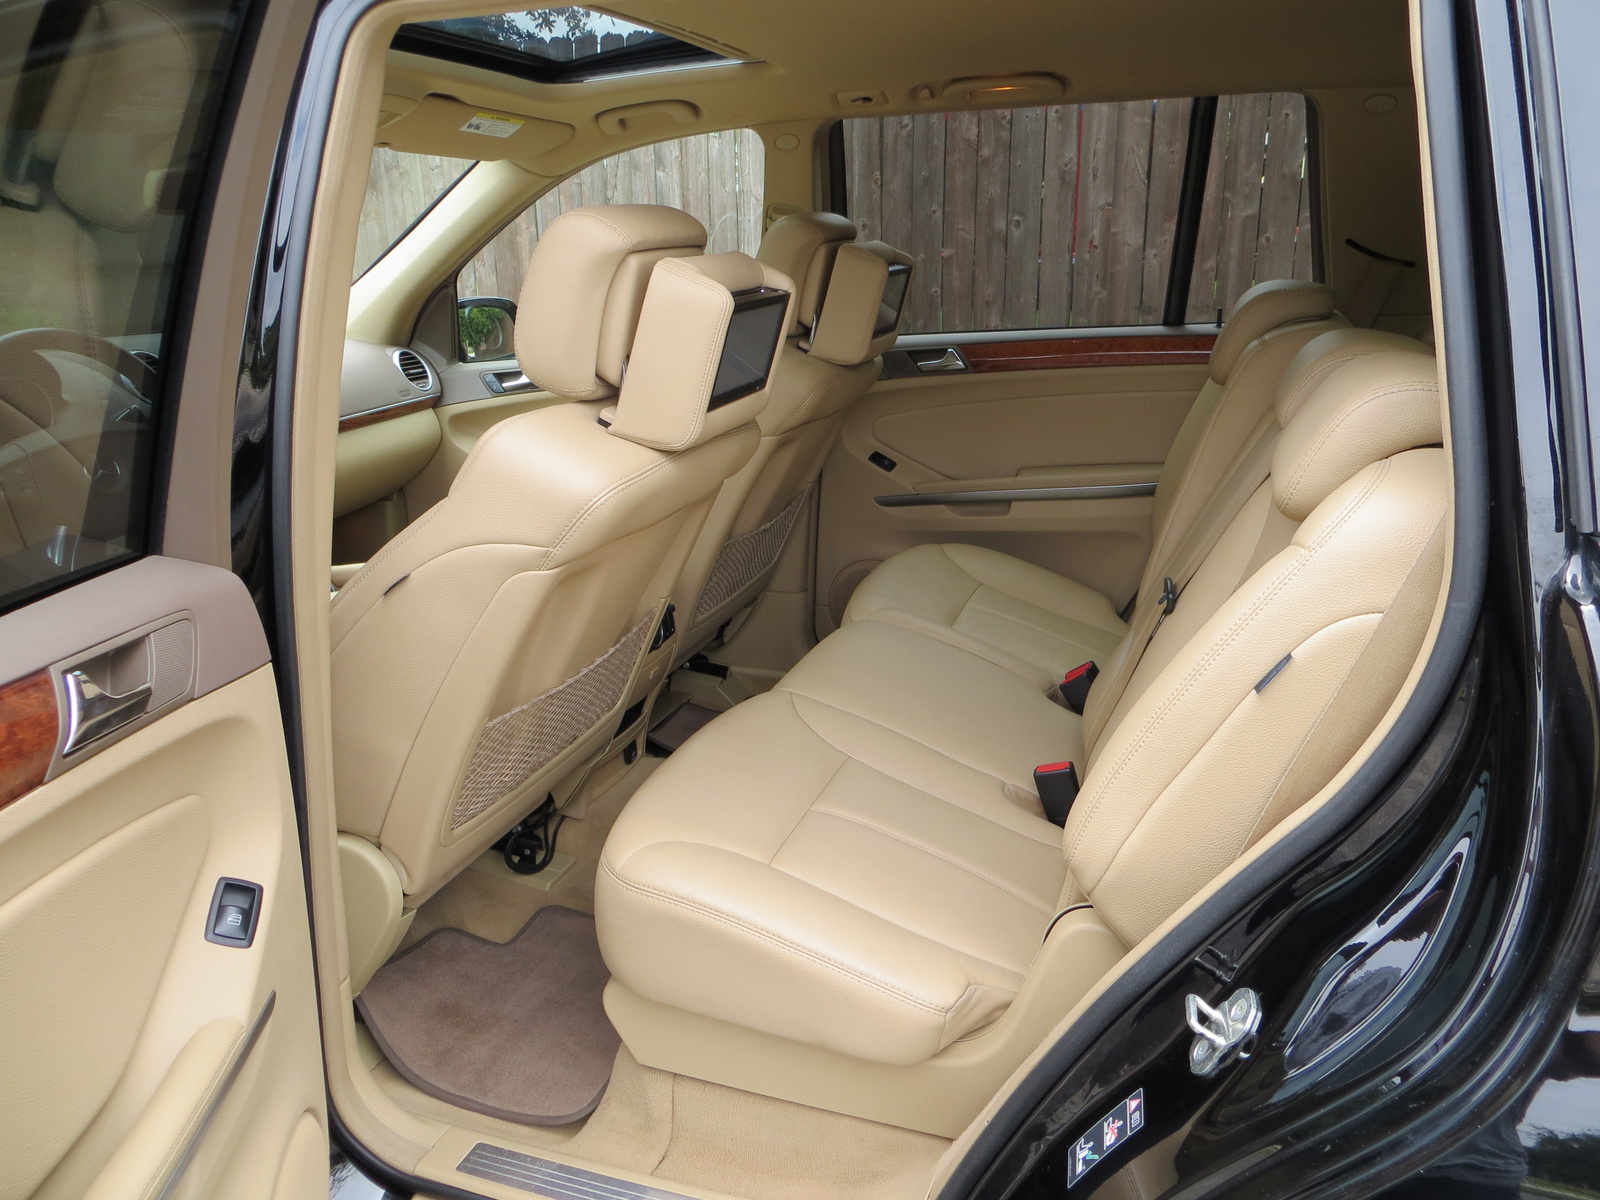 Mercedes gl450 interior dimensions #7